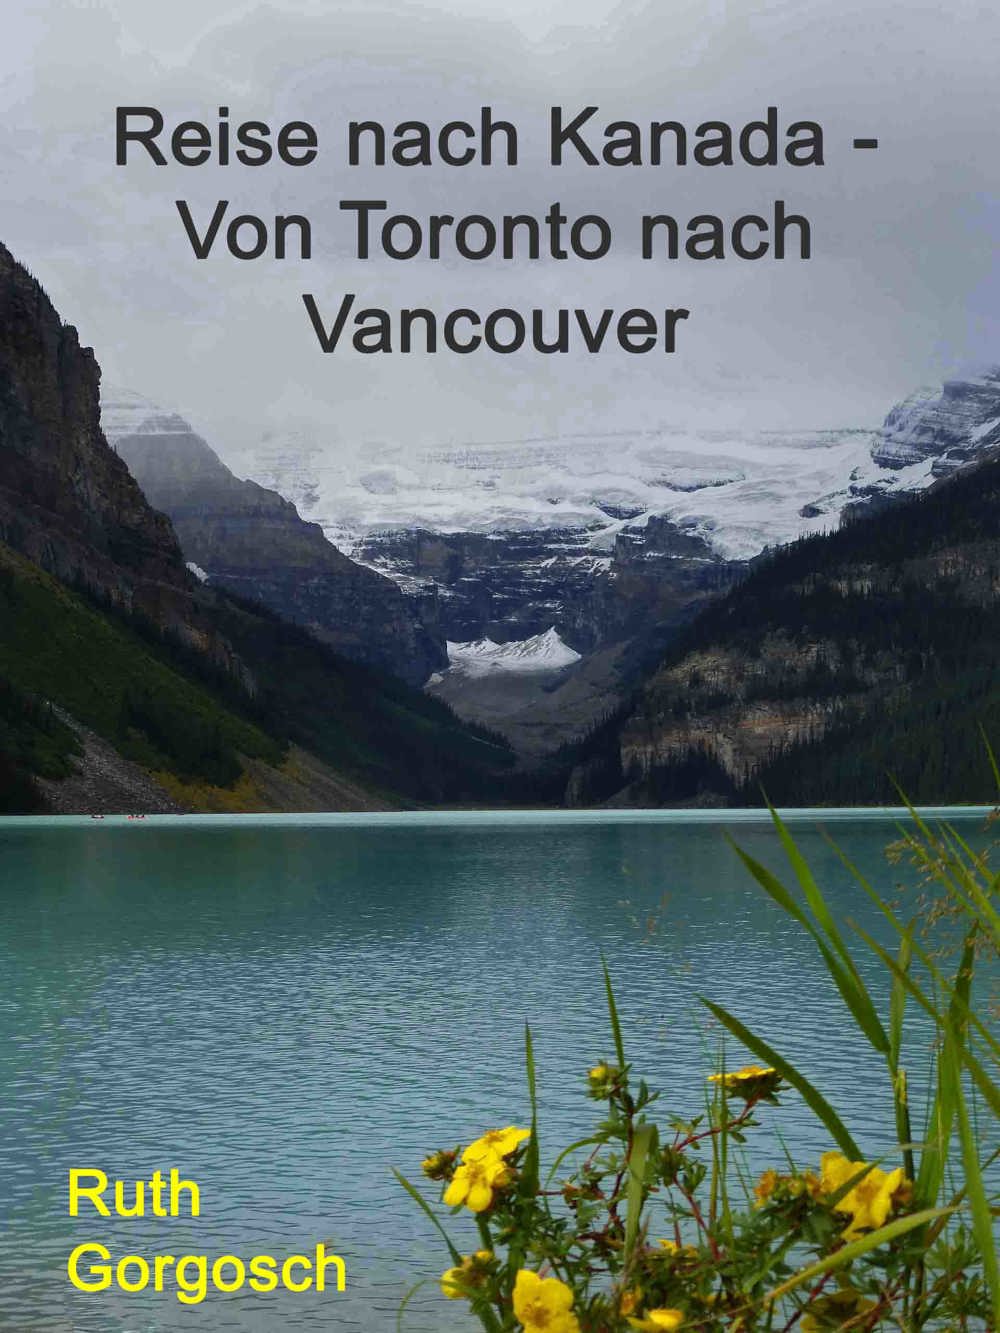 Kostenlosaktion zu meinem E-Book  Reise nach Kanada   Von Toronto nach Vancouver 